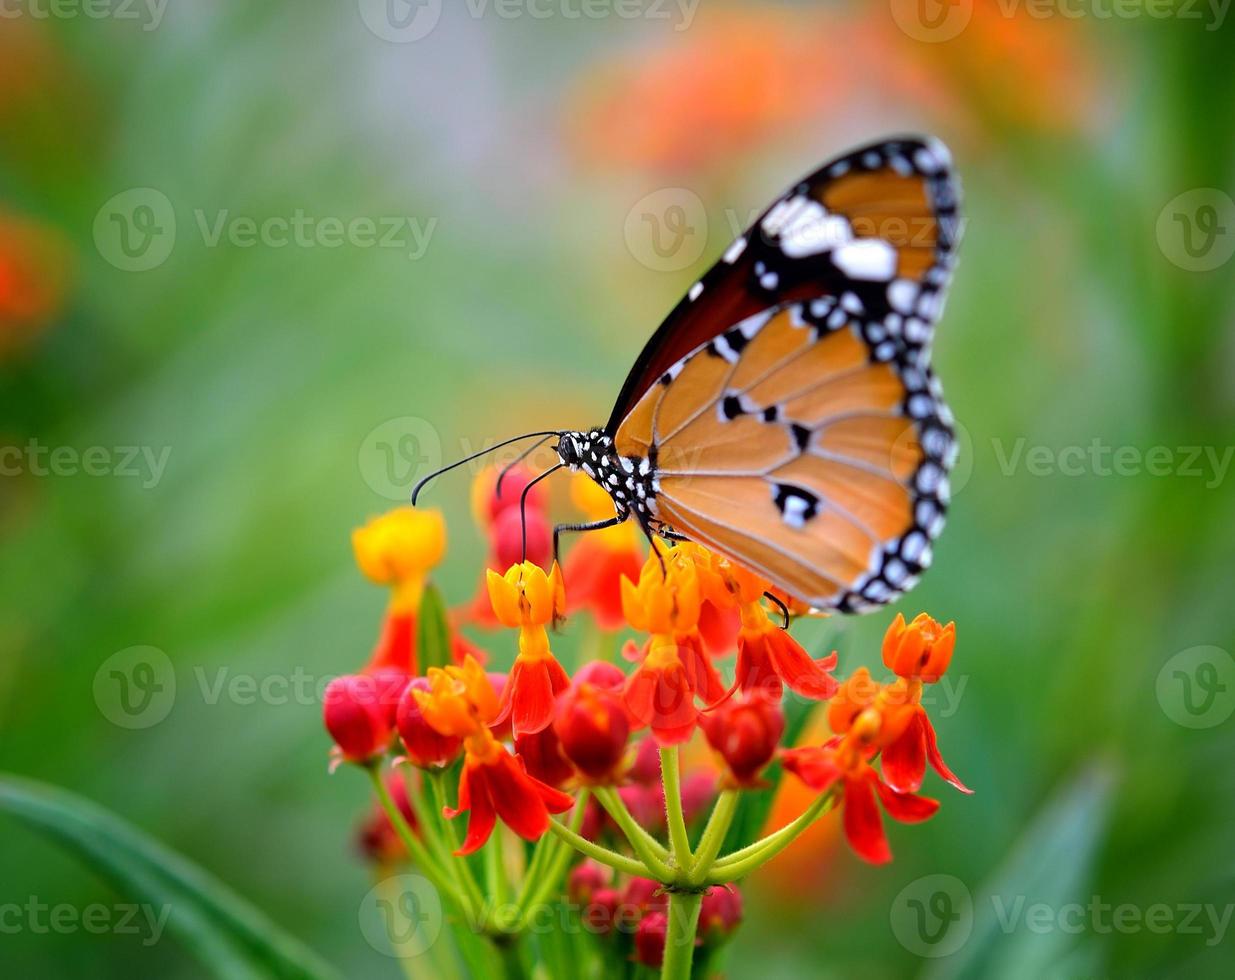 vlinder op oranje bloem in de tuin foto